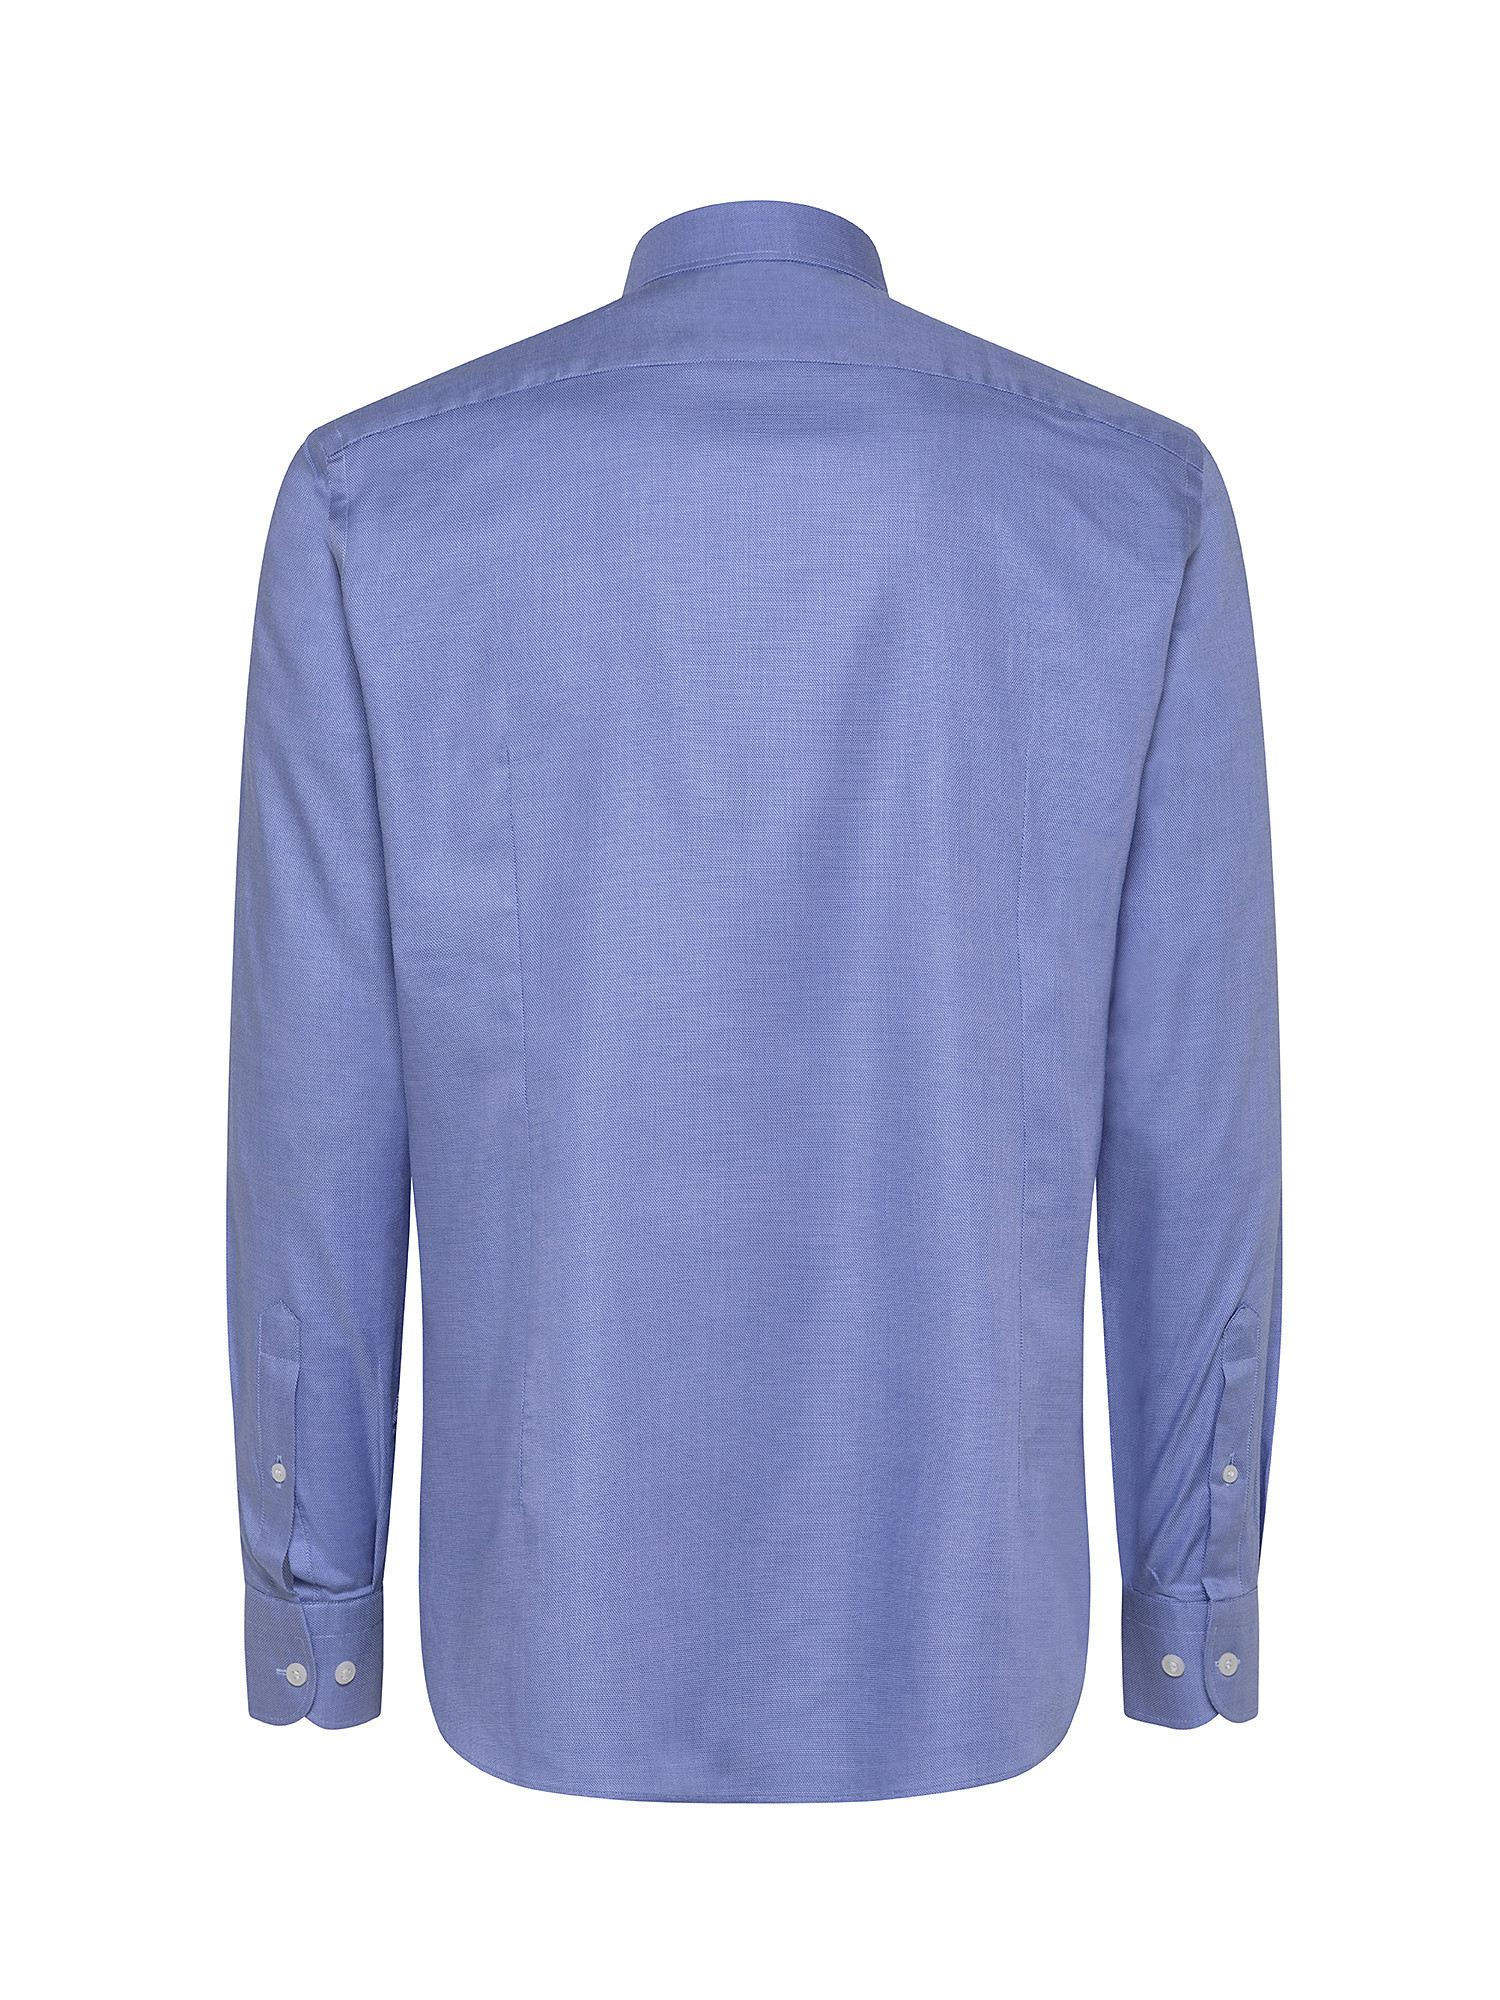 Camicia slim fit cotone grisaglia, Azzurro, large